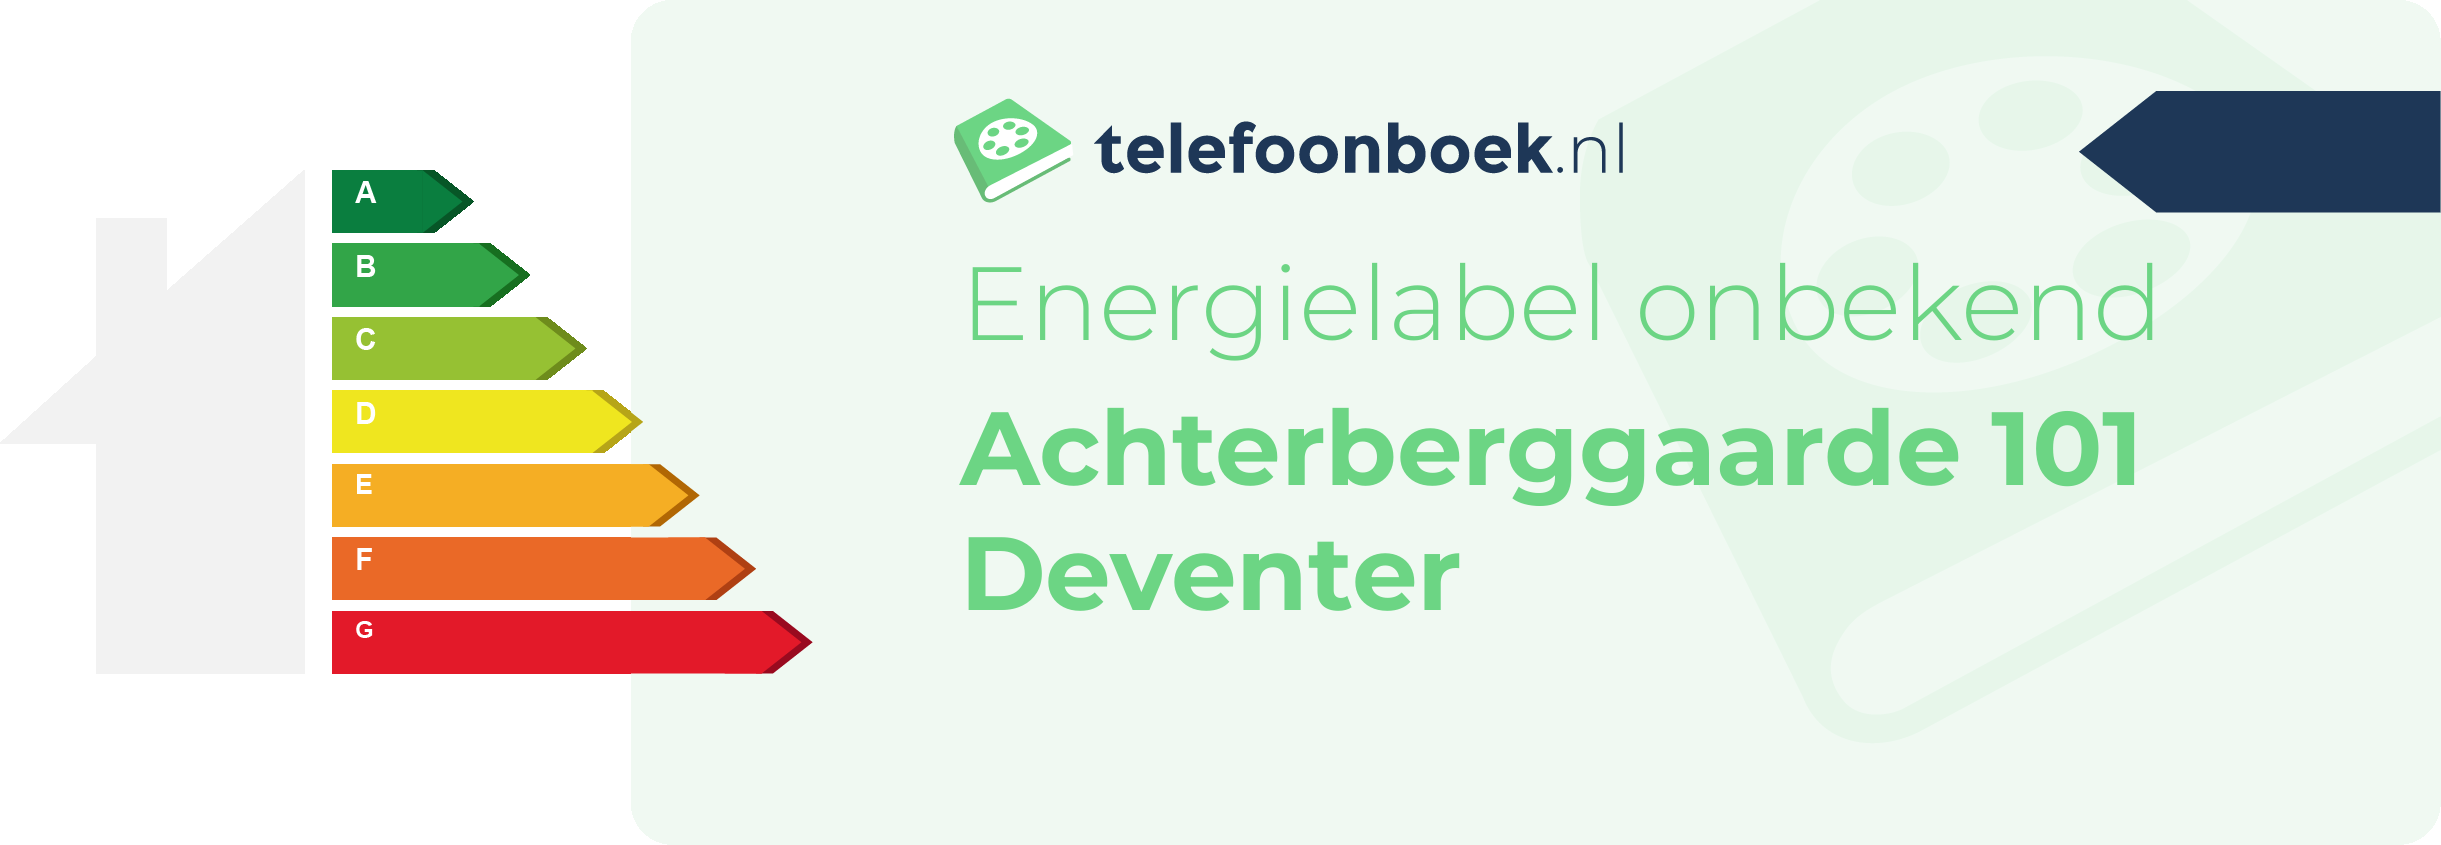 Energielabel Achterberggaarde 101 Deventer